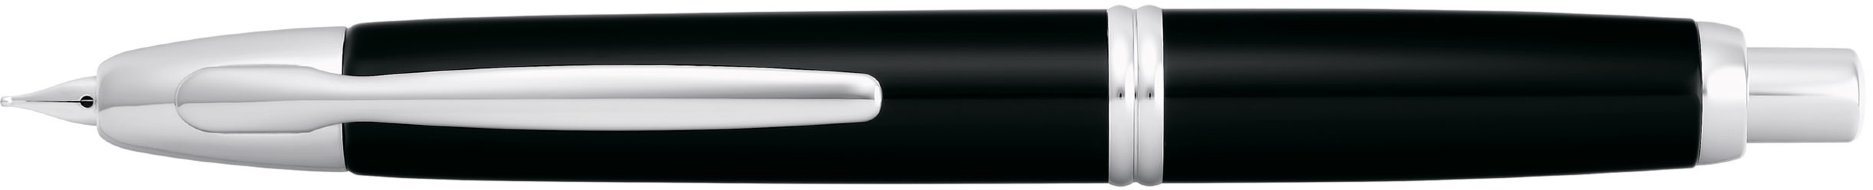 Перьевая ручка Pilot Capless Black Rhodium перо EF, F, M, SU